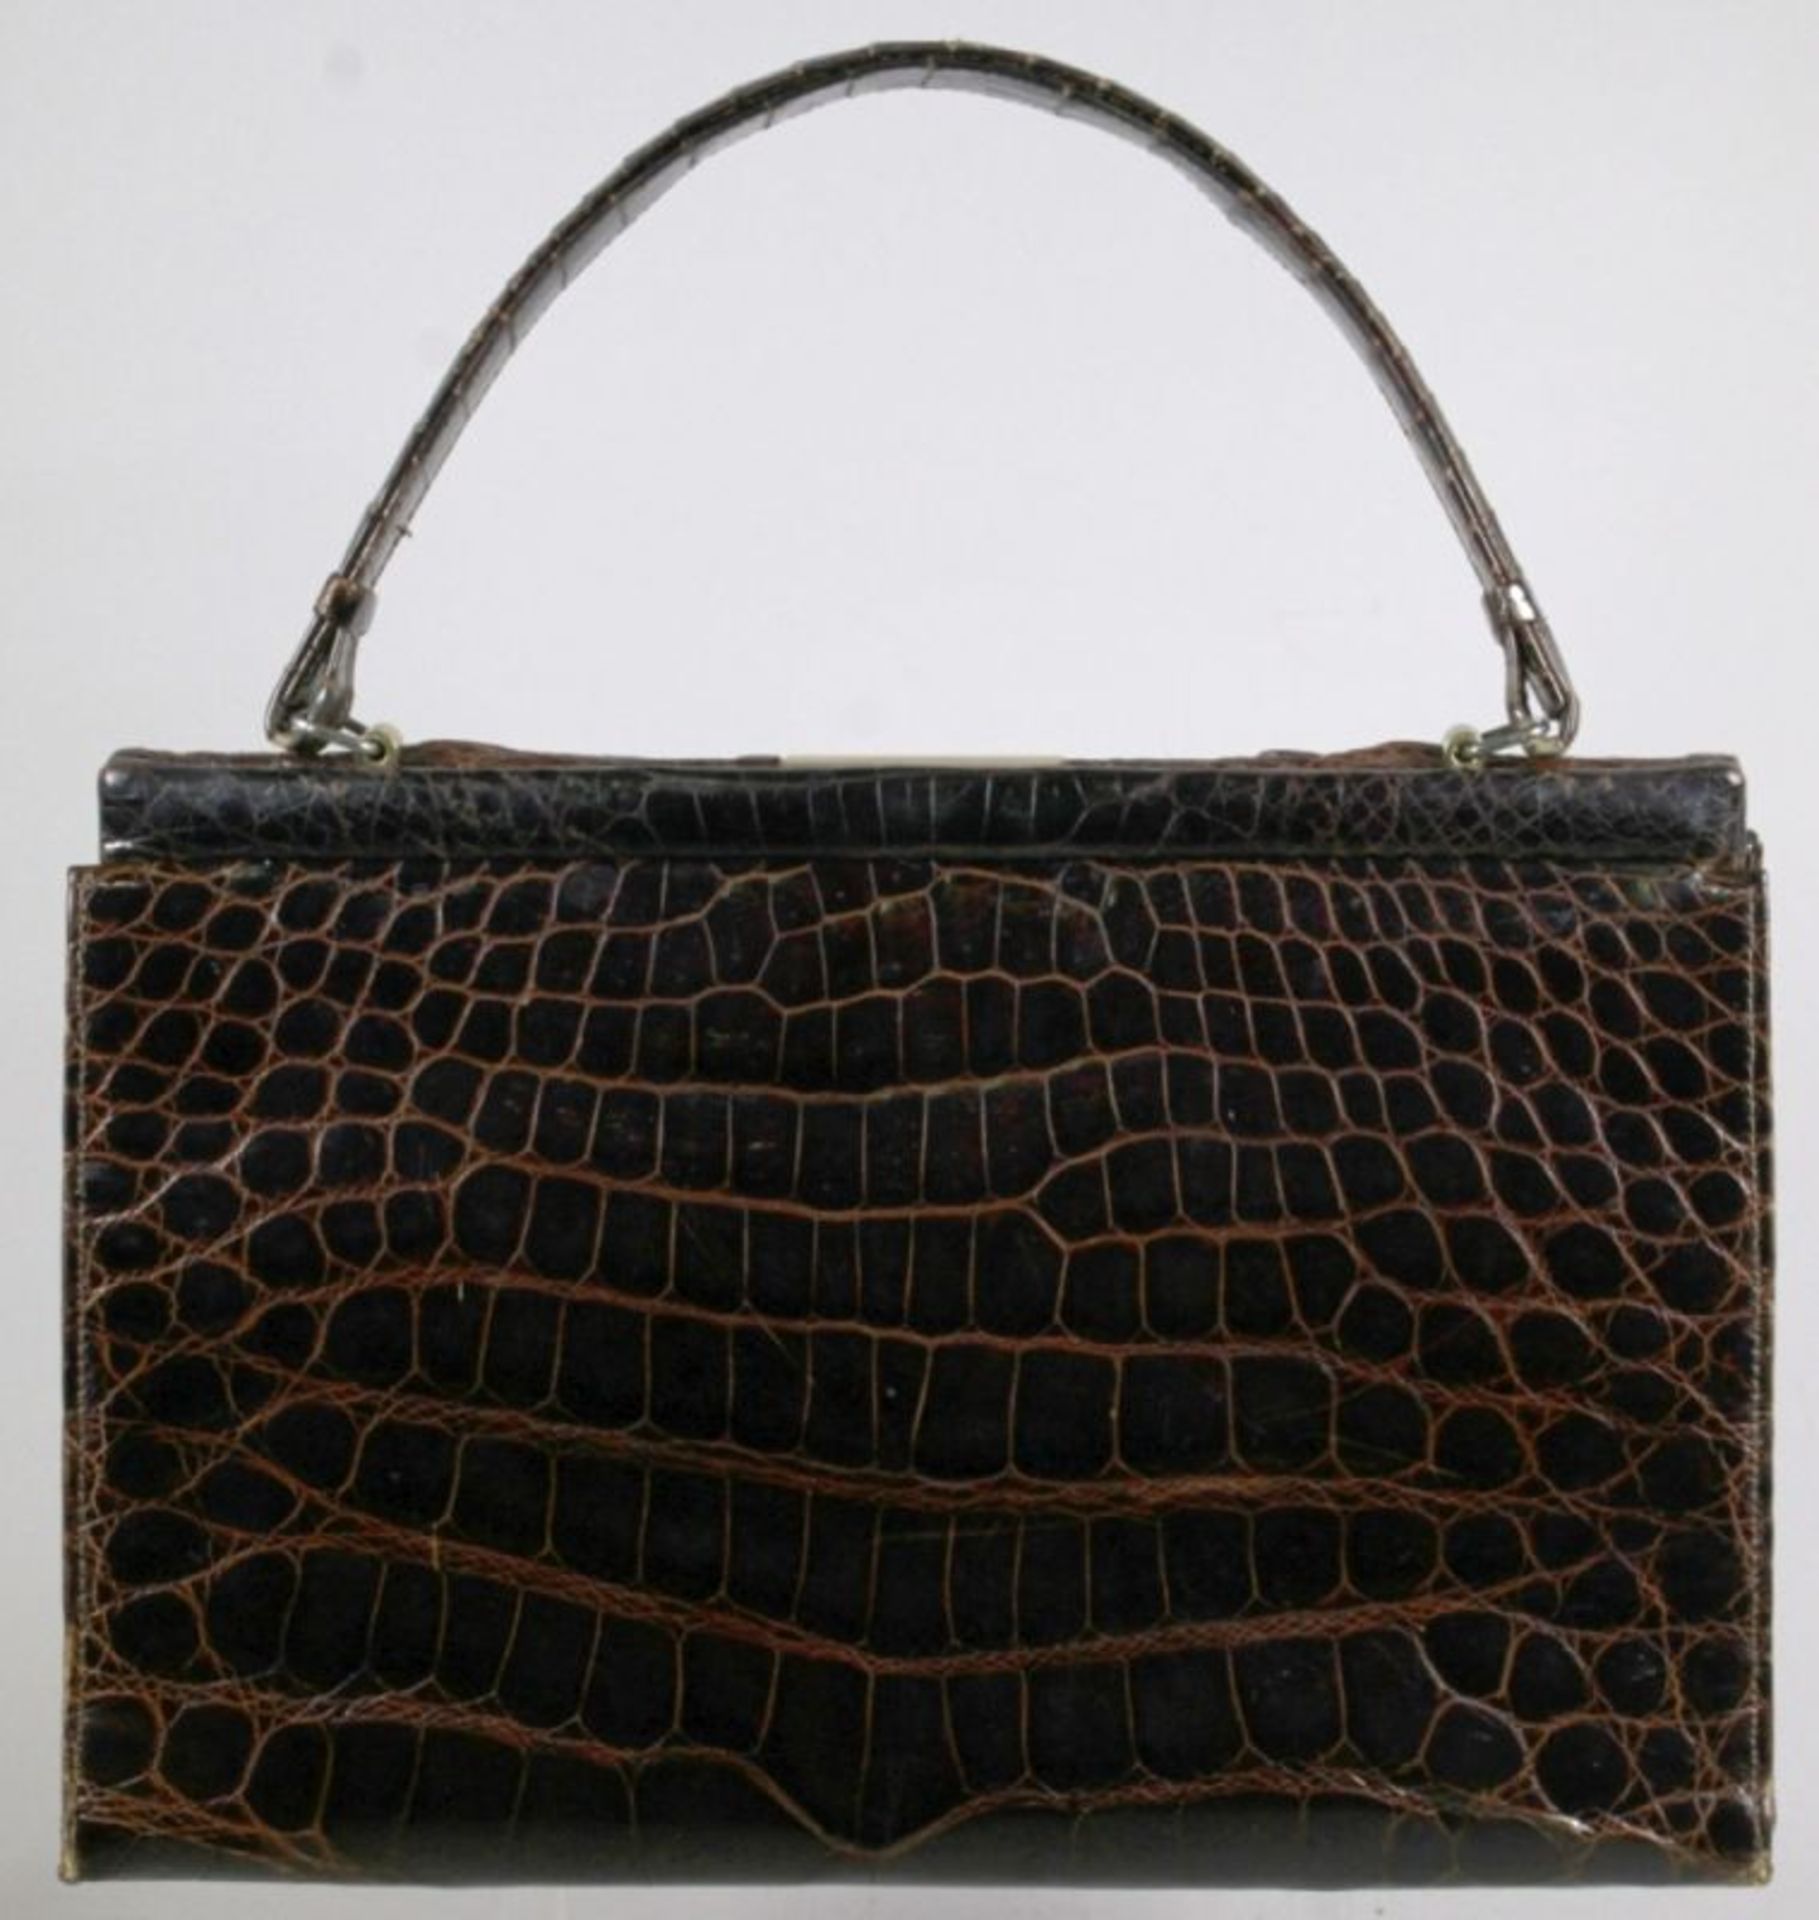 Damen-Handtasche, dunkelbraunes Zuchtalligator-Leder, frontseitig gefertigt mit mittiggroßer, - Bild 2 aus 3